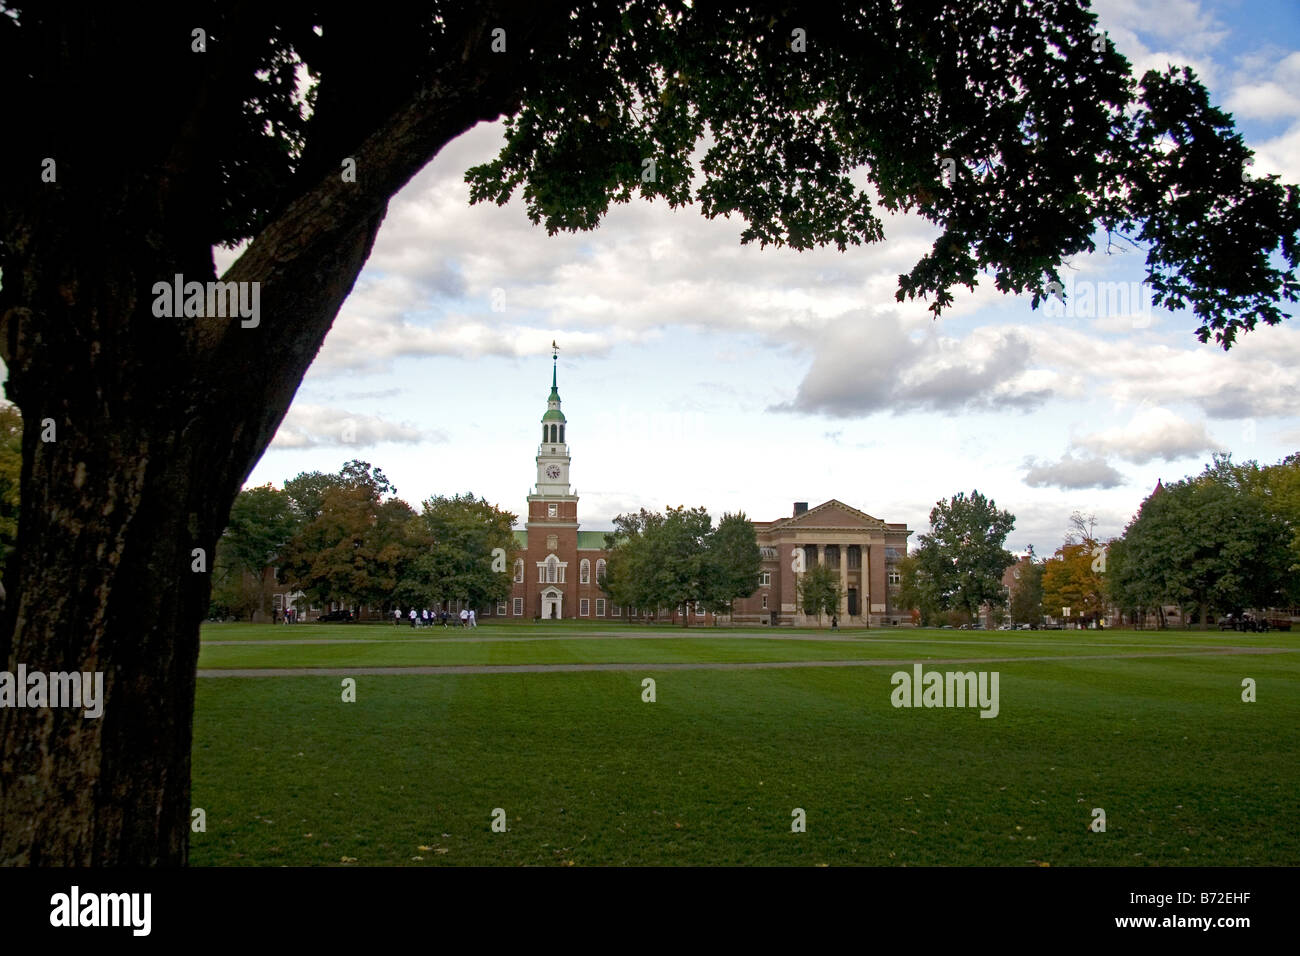 Baker-Denkmal-Bibliothek auf dem Campus des Dartmouth College in Hanover, New Hampshire USA gelegen Stockfoto